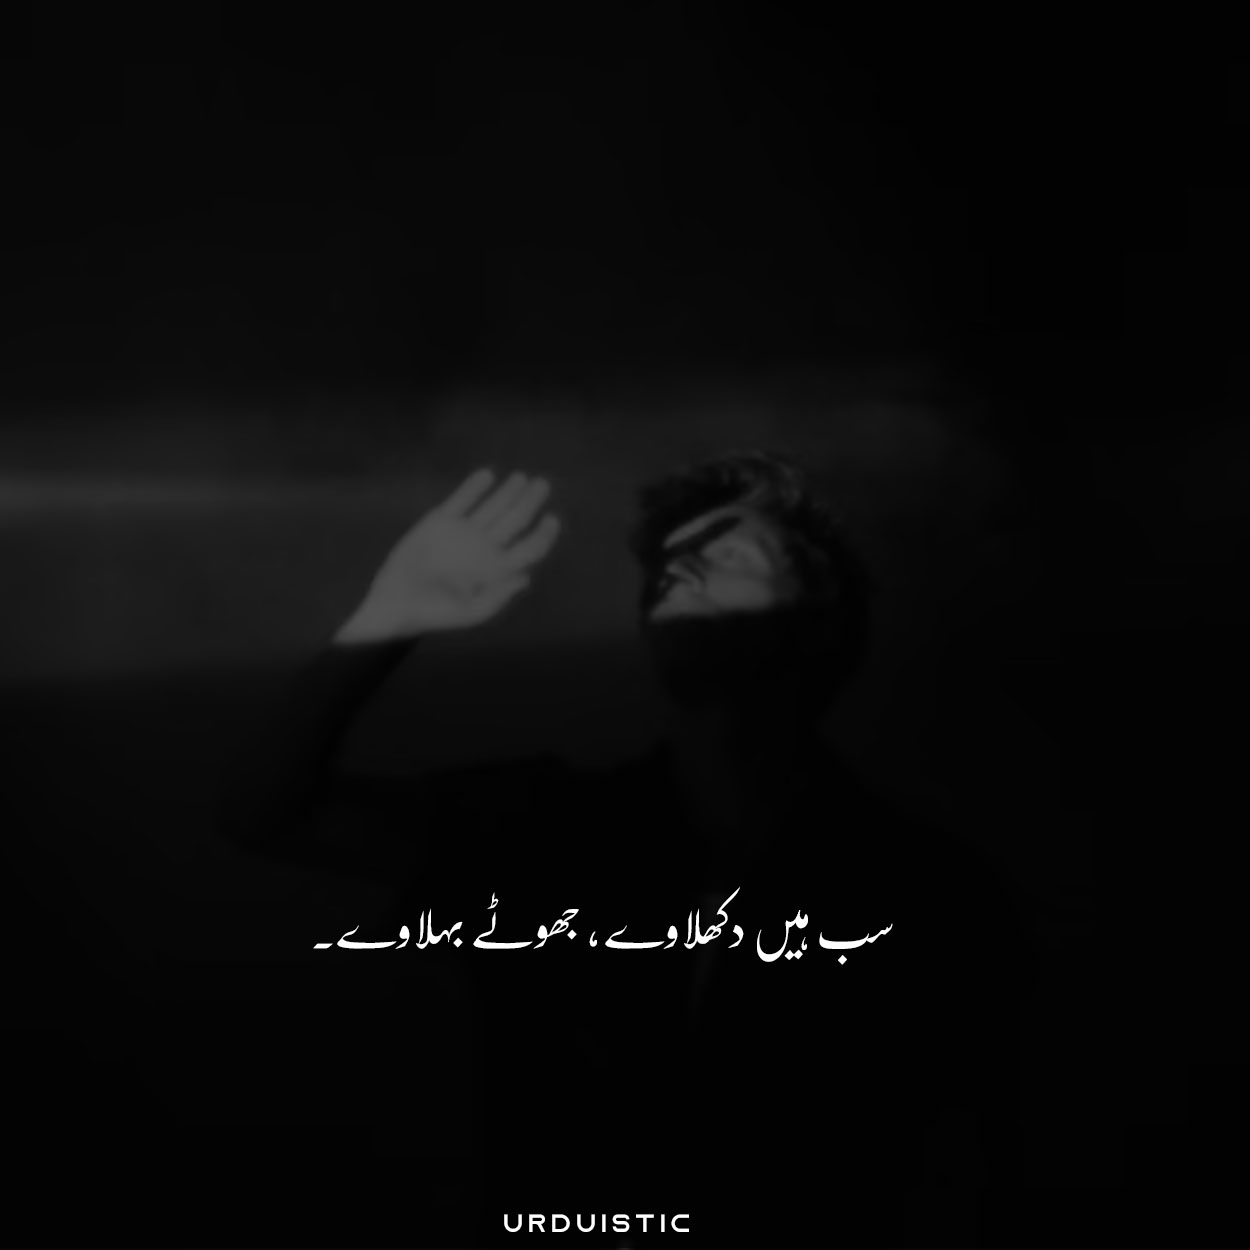 Aesthetic Urdu Captions